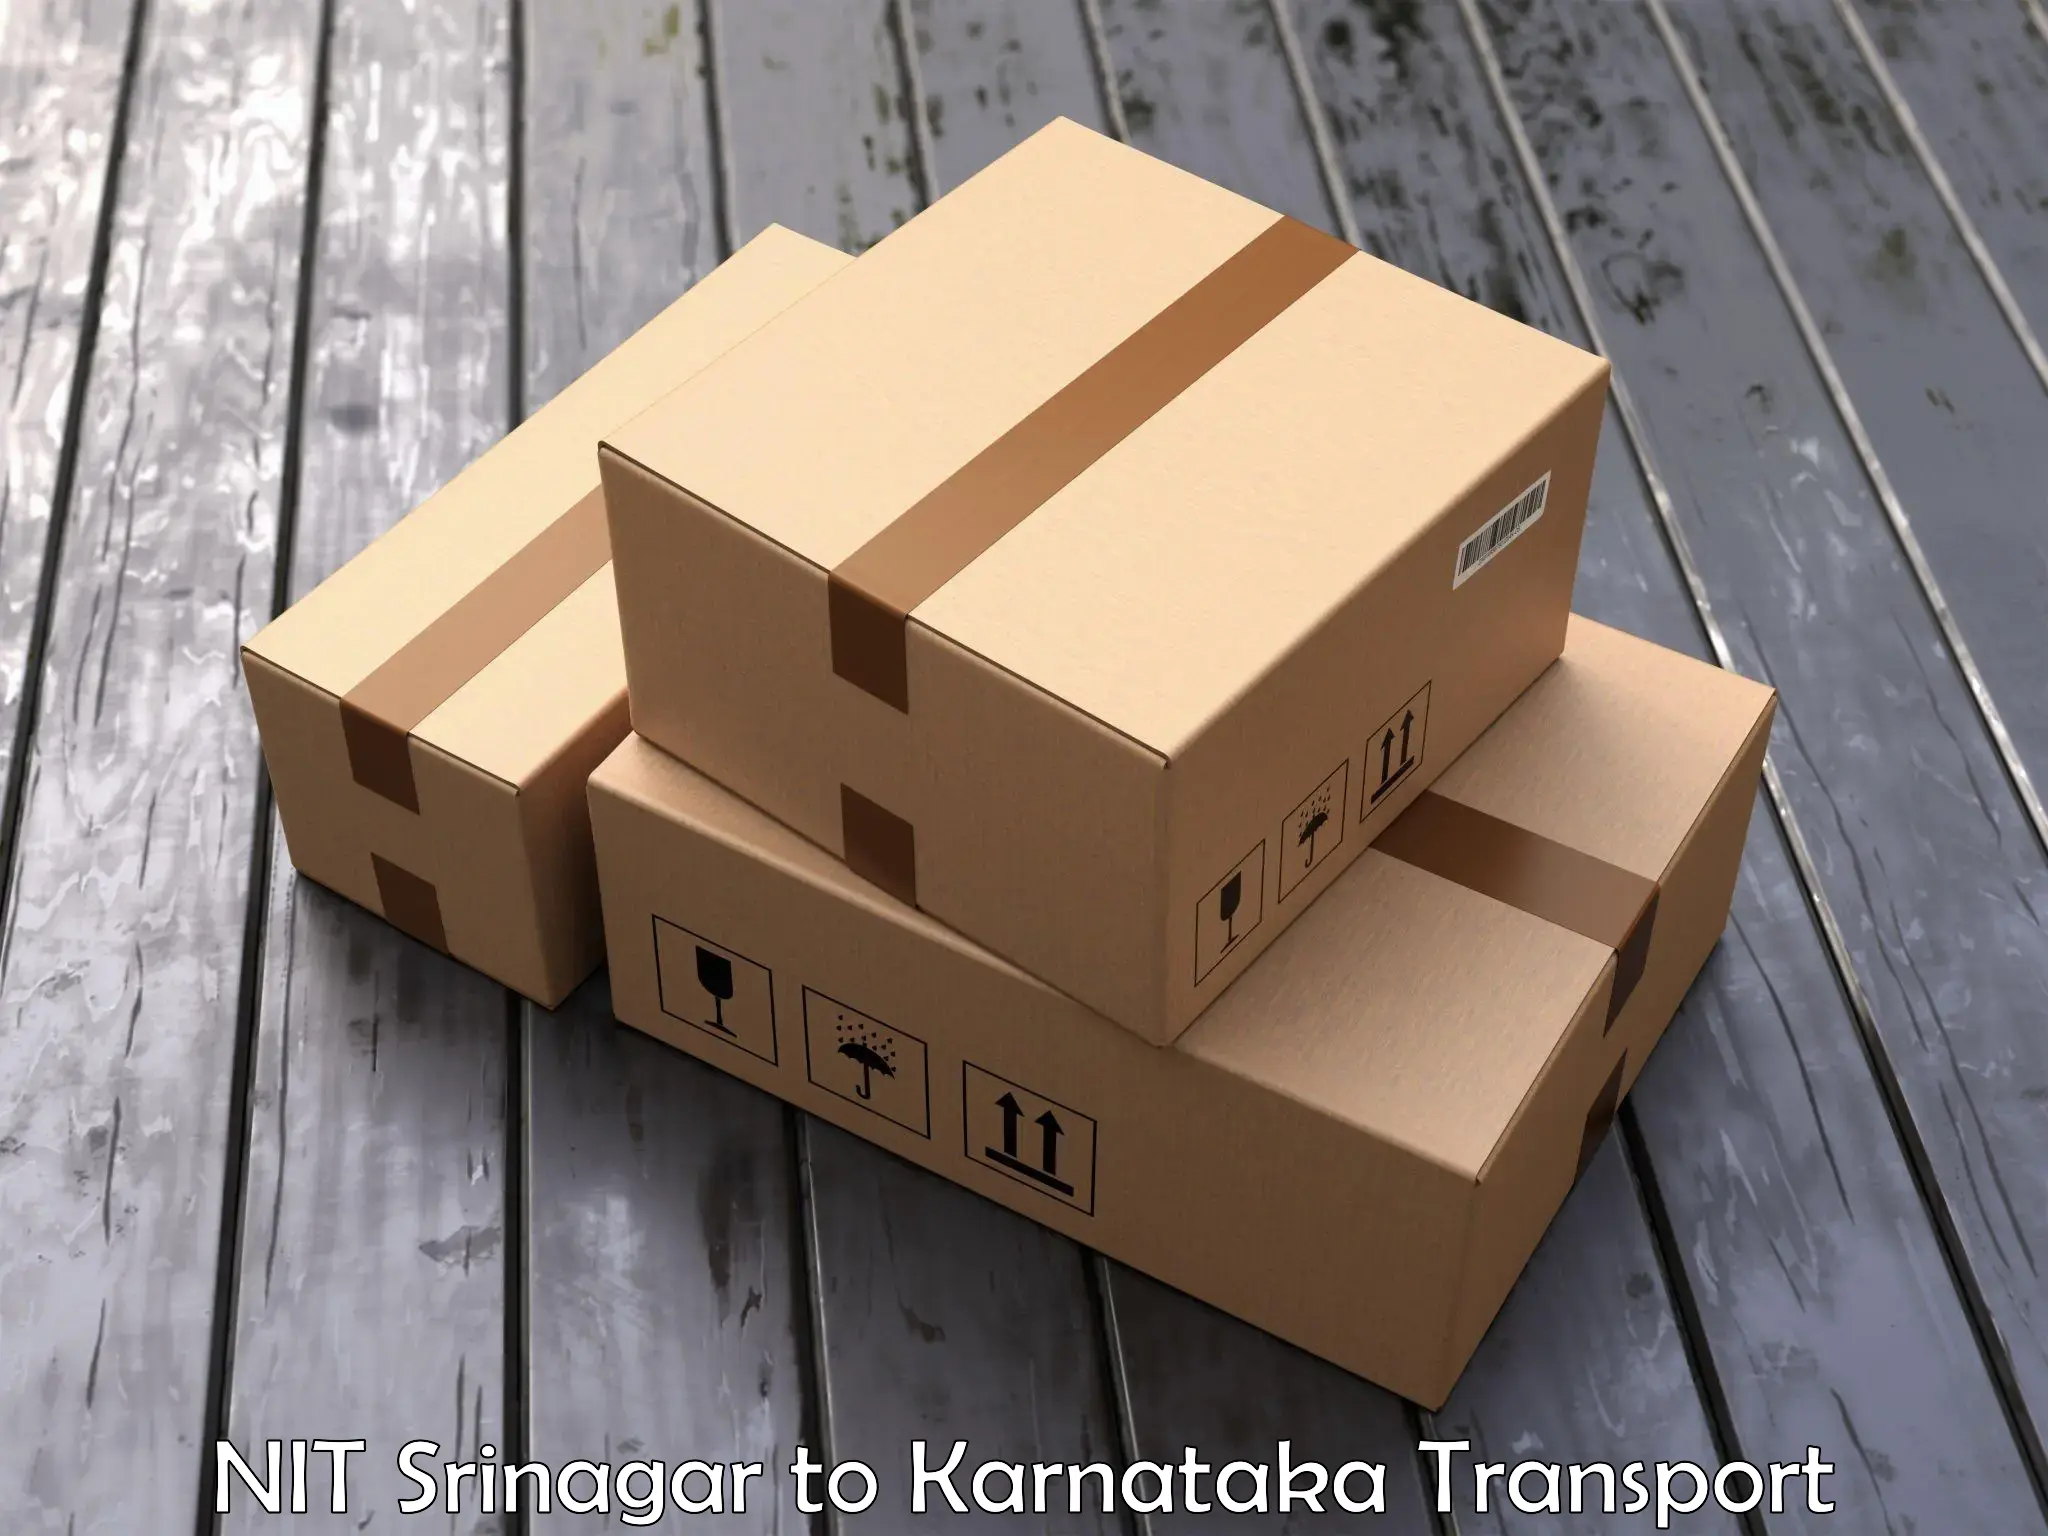 Vehicle parcel service NIT Srinagar to Karnataka